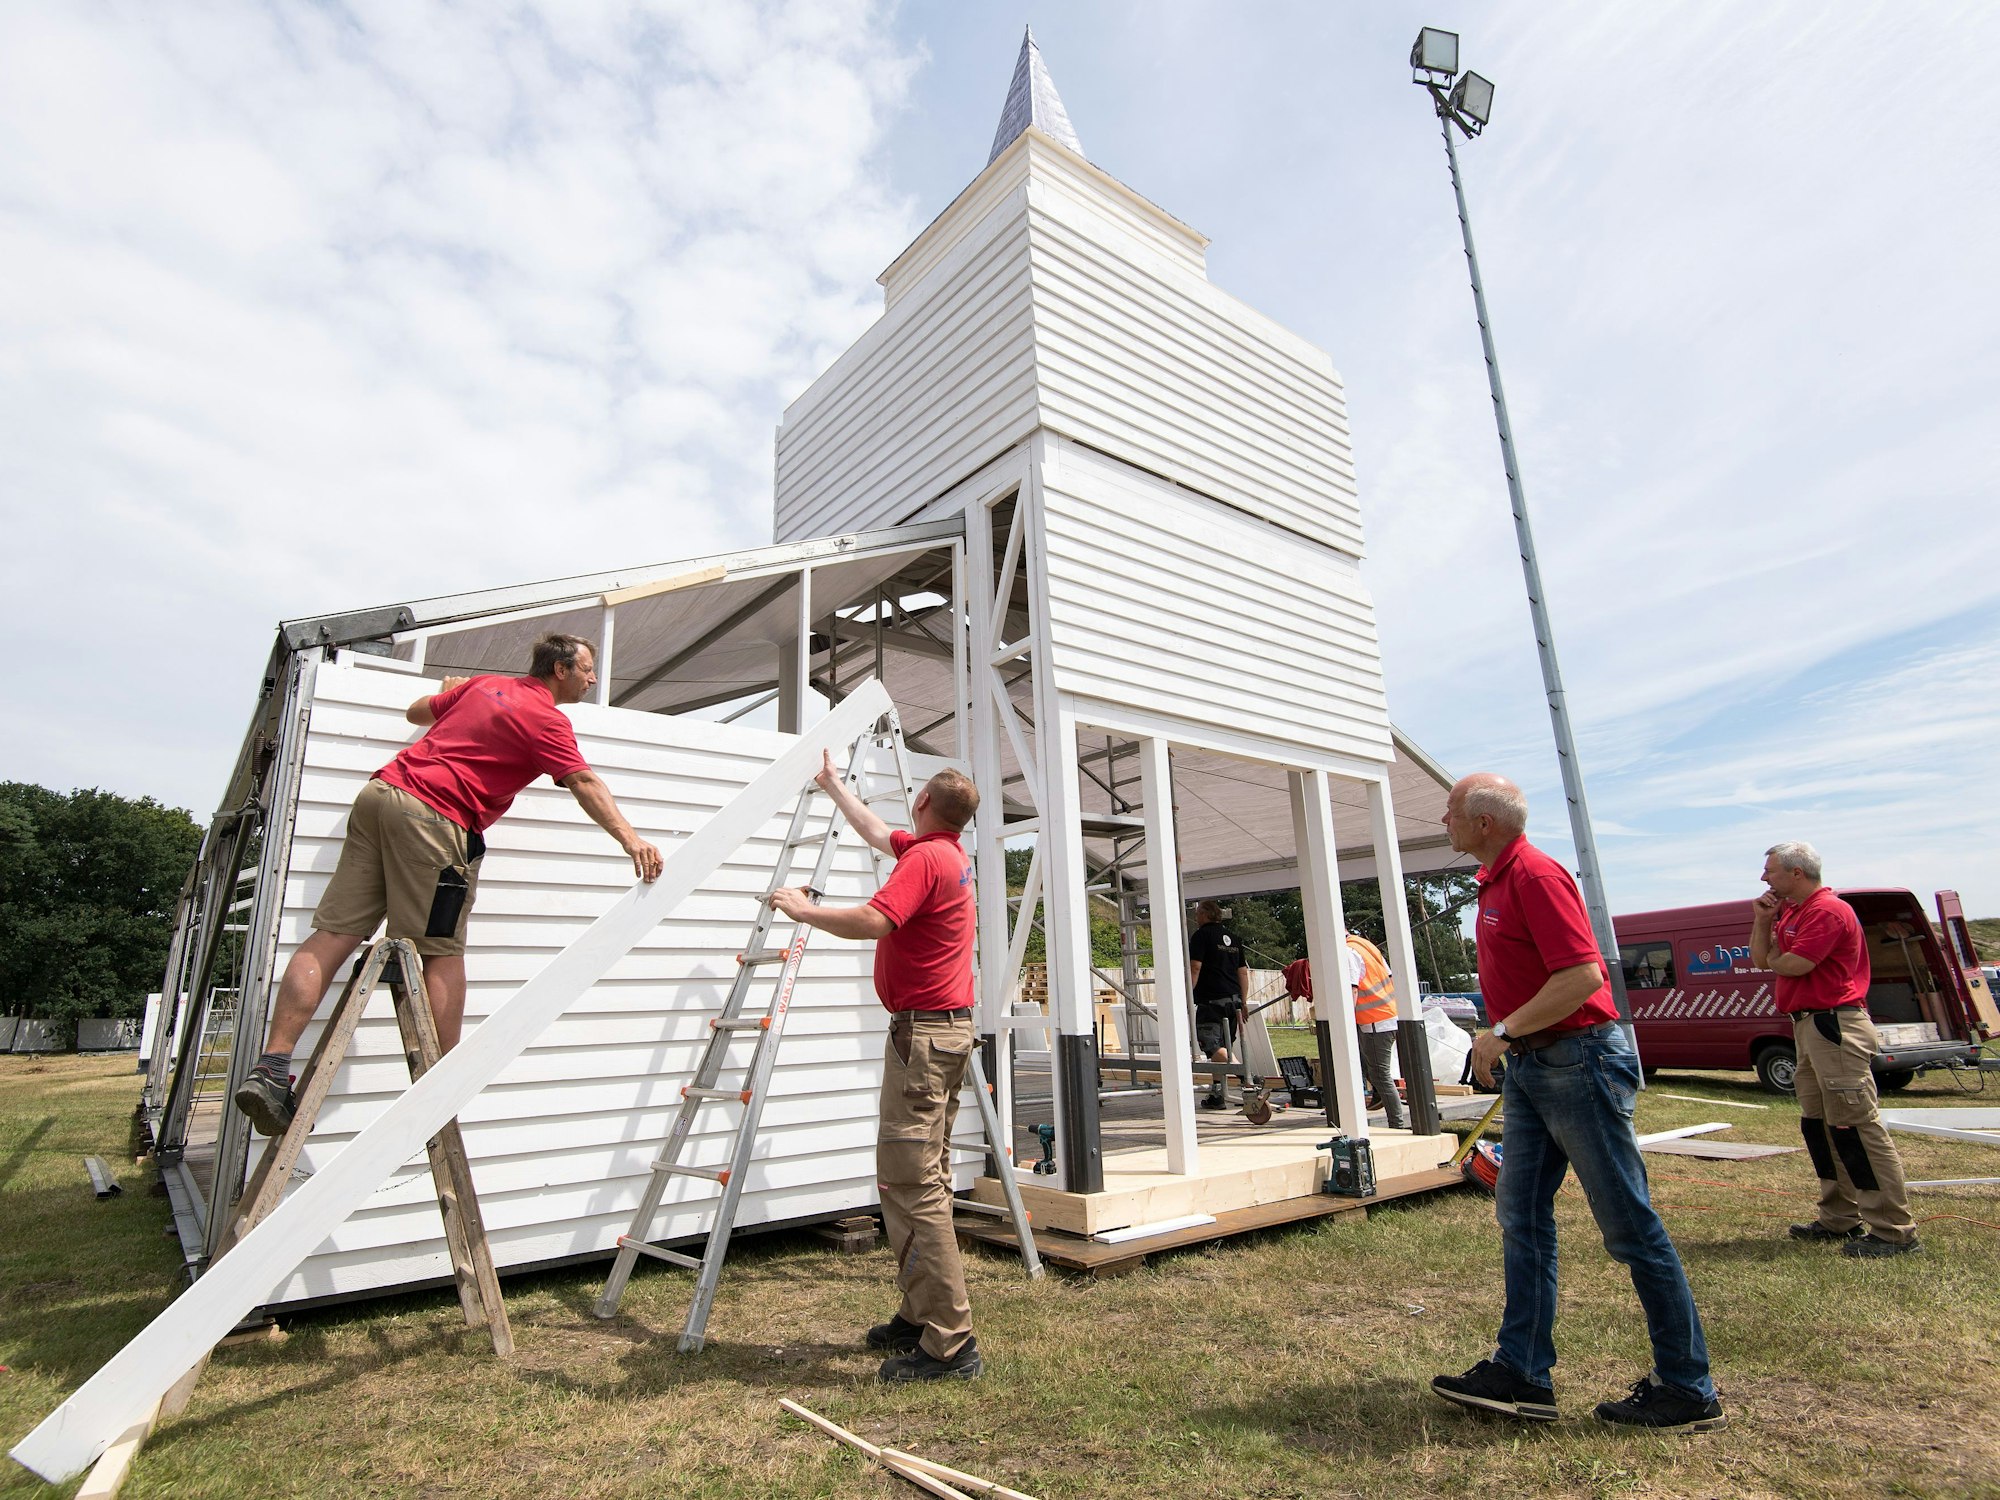 Arbeiter bauen unter der Aufsicht von Norbert Hermens im Juli 2016 auf dem Festivalgelände von Parookaville in Weeze an einer Kirche.